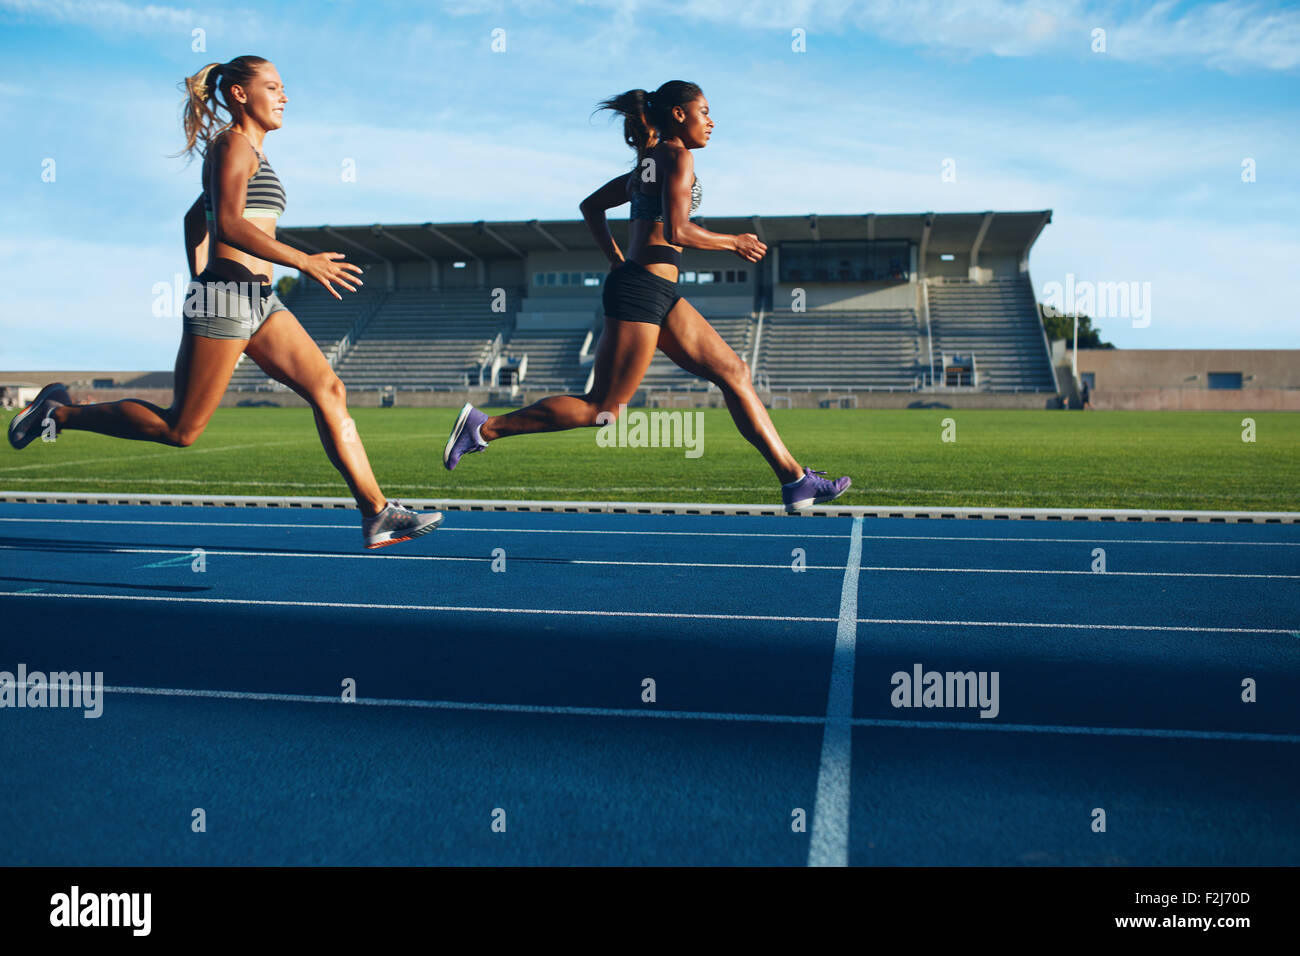 Athleten erreicht Ziellinie auf Rennstrecke während der Trainingseinheit. Junge Weibchen konkurrieren in einem Track-Event. Laufenden Rennen pra Stockfoto